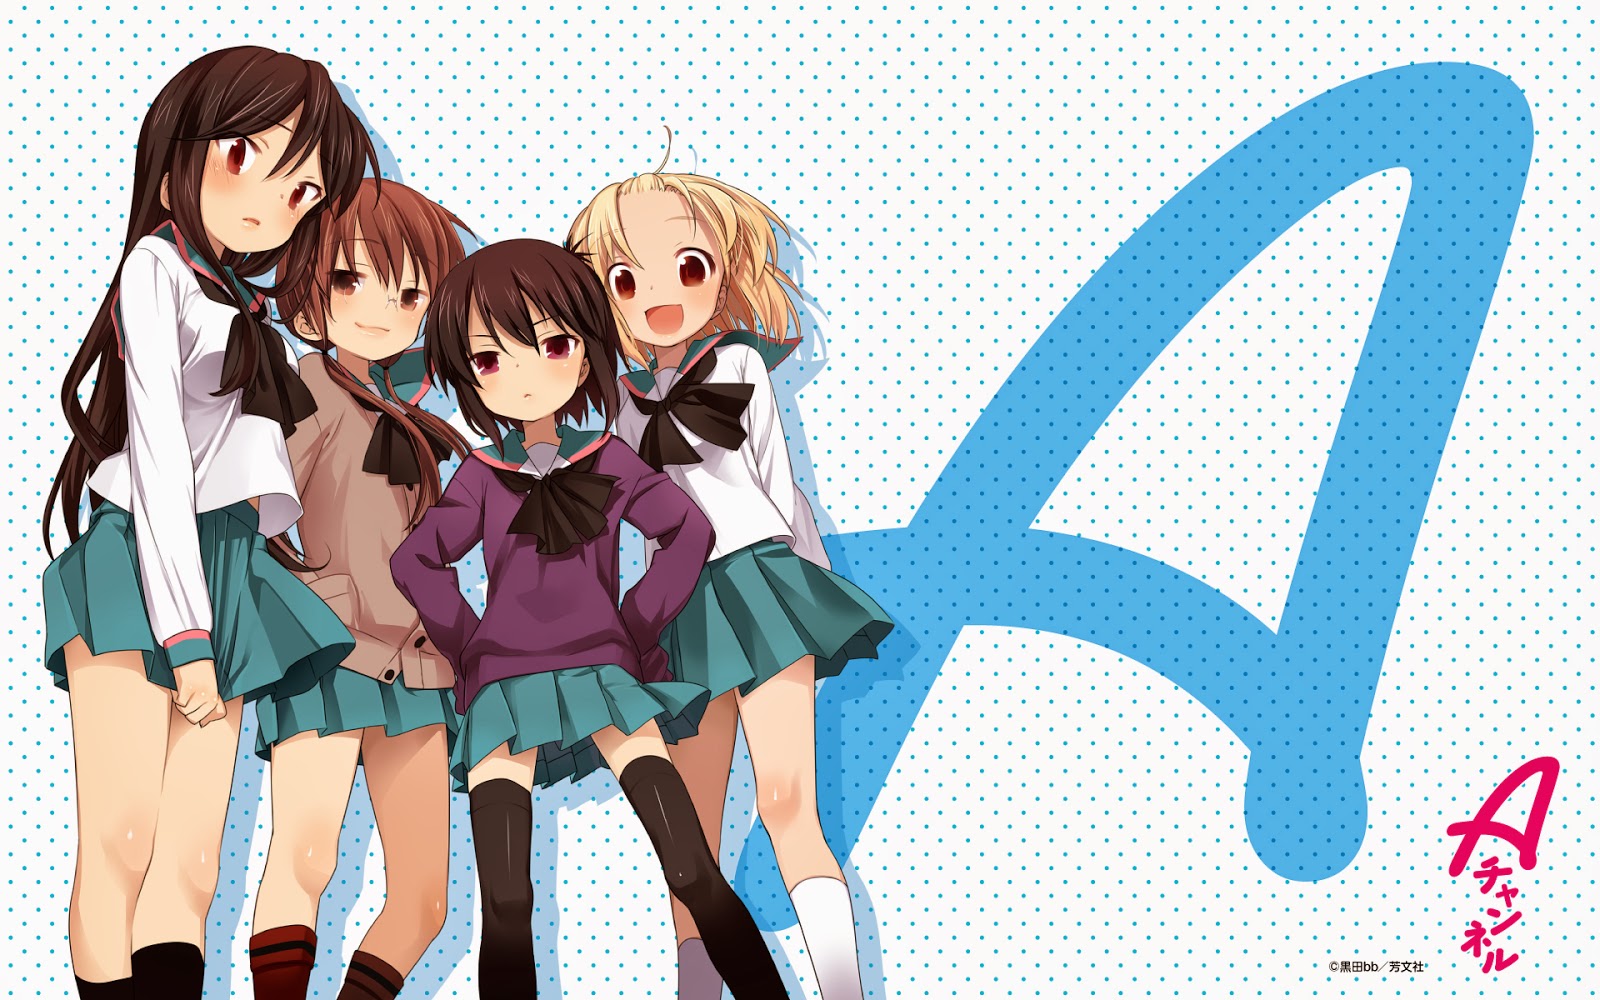 Kotoura-san / 2013 Yılında Başlayan Yeni Bir Anime